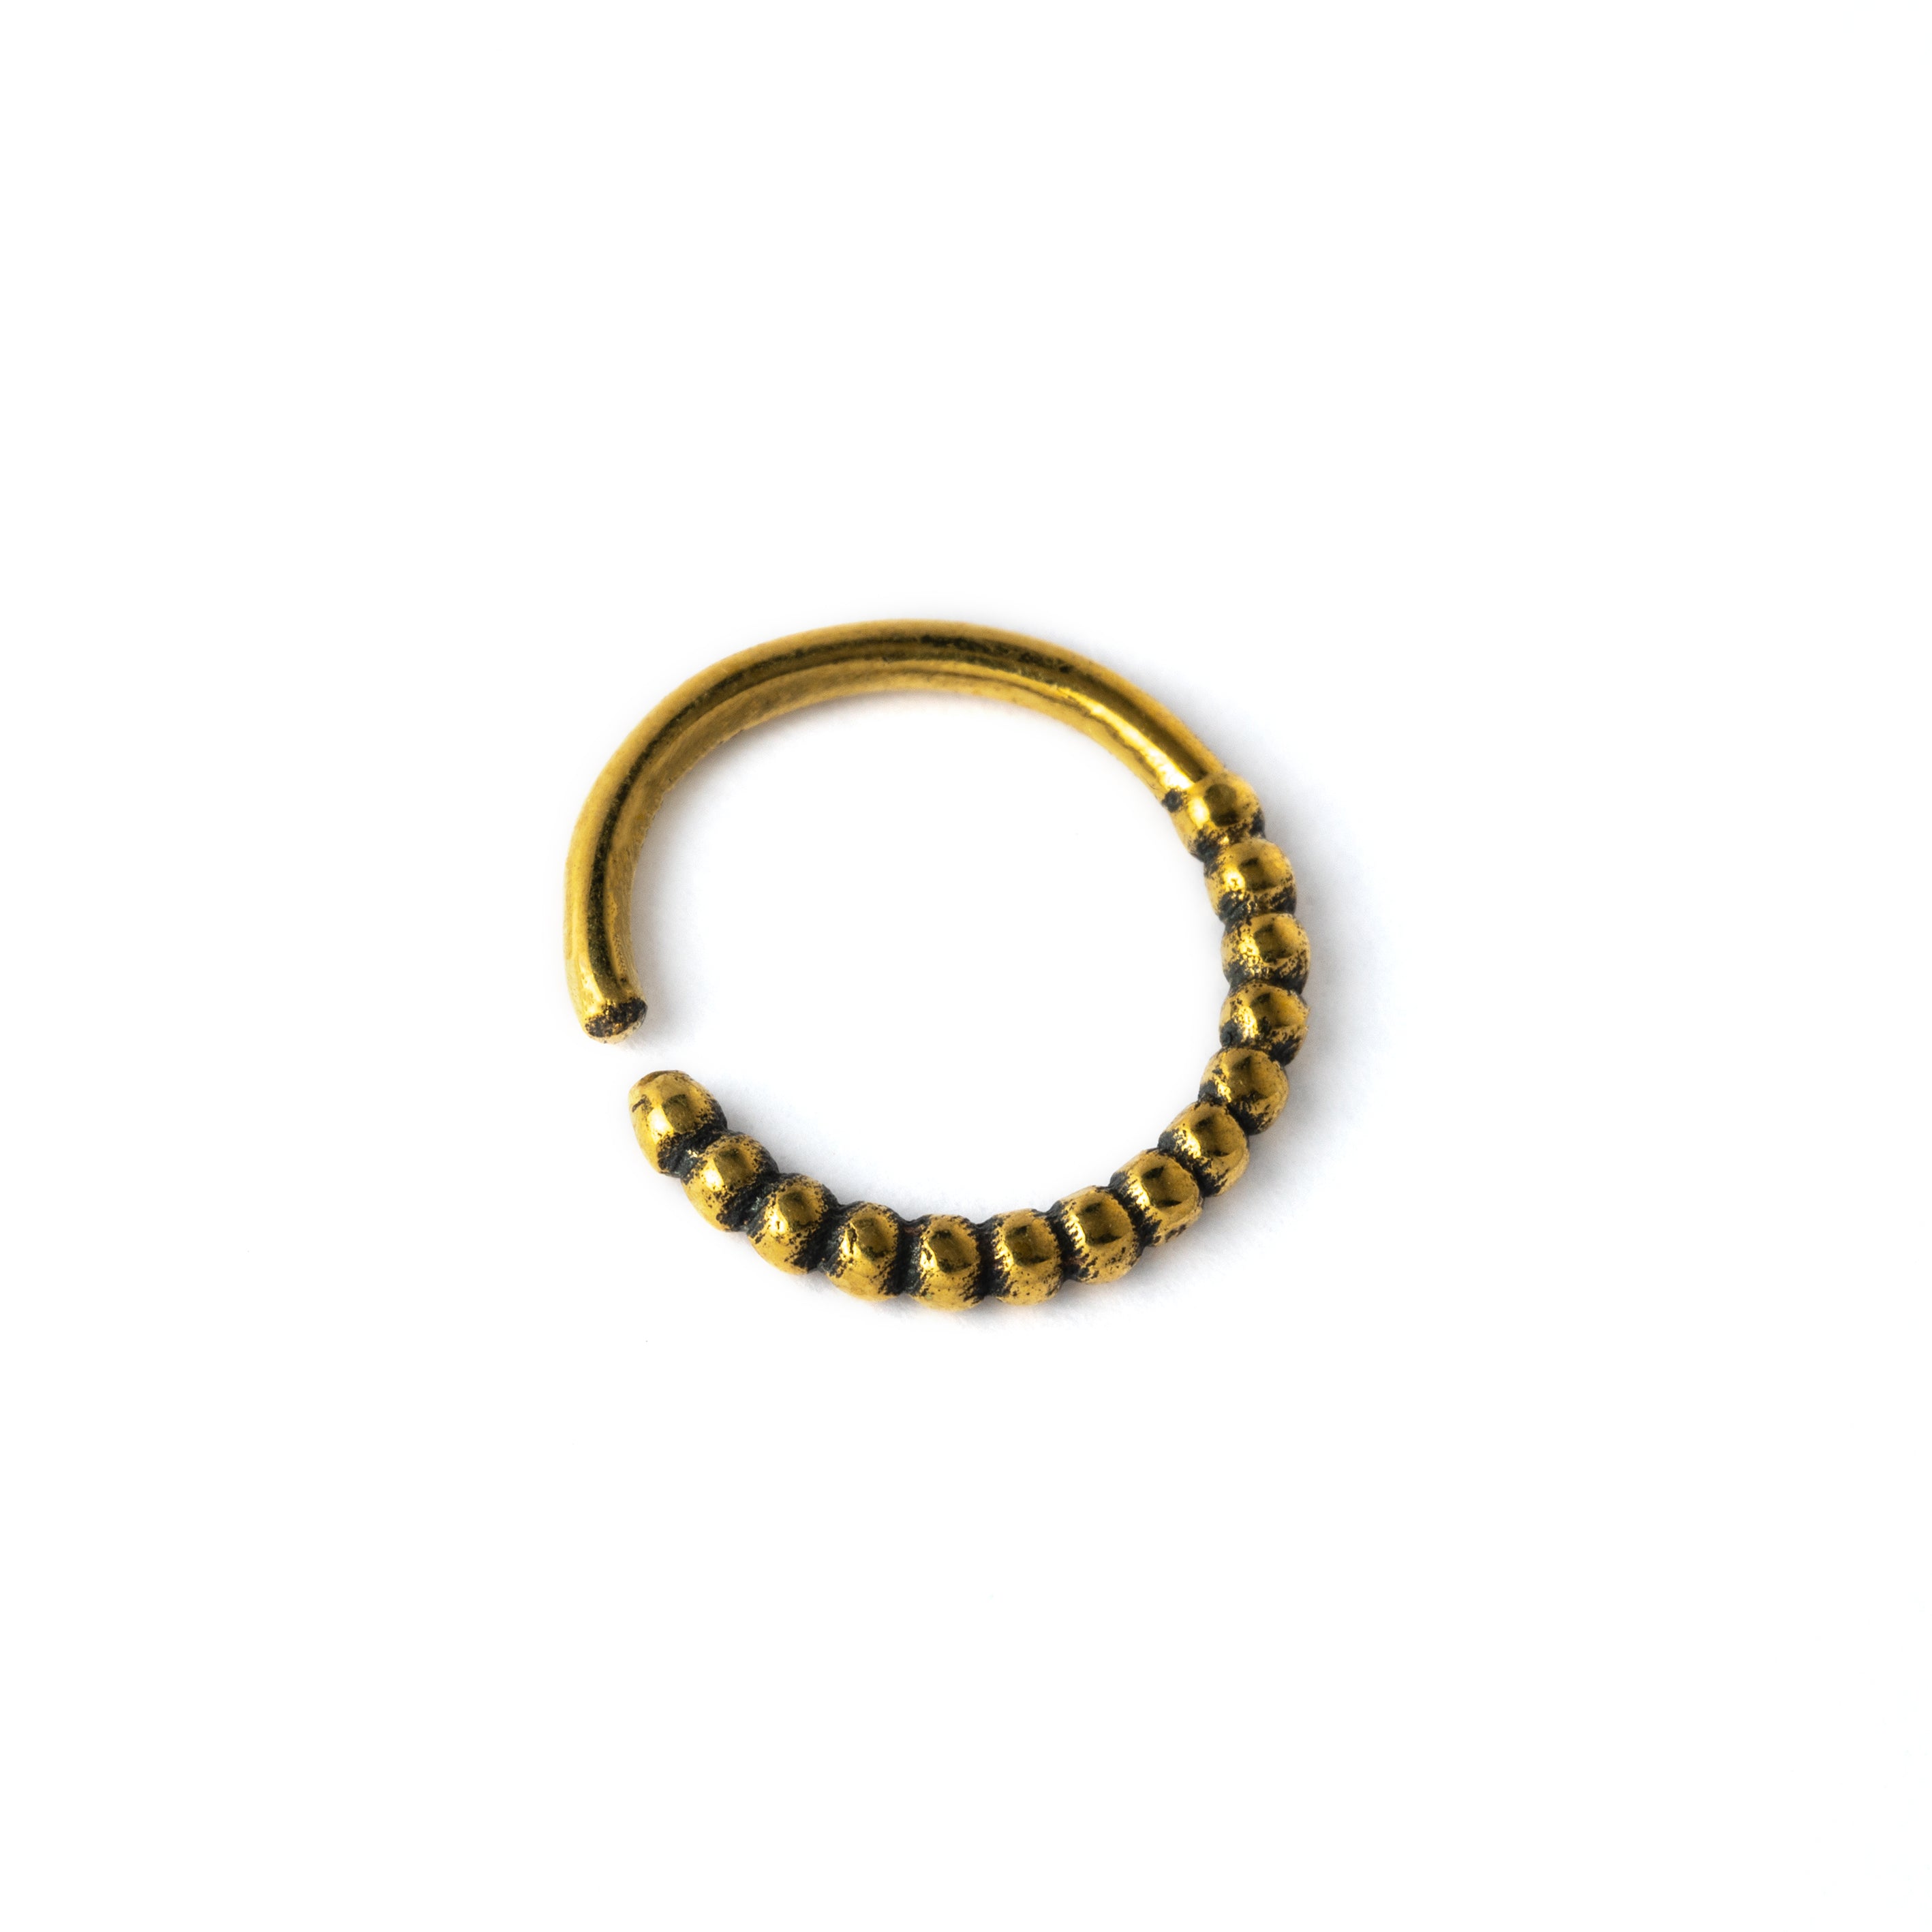 Ravi golden brass septum ring left side view